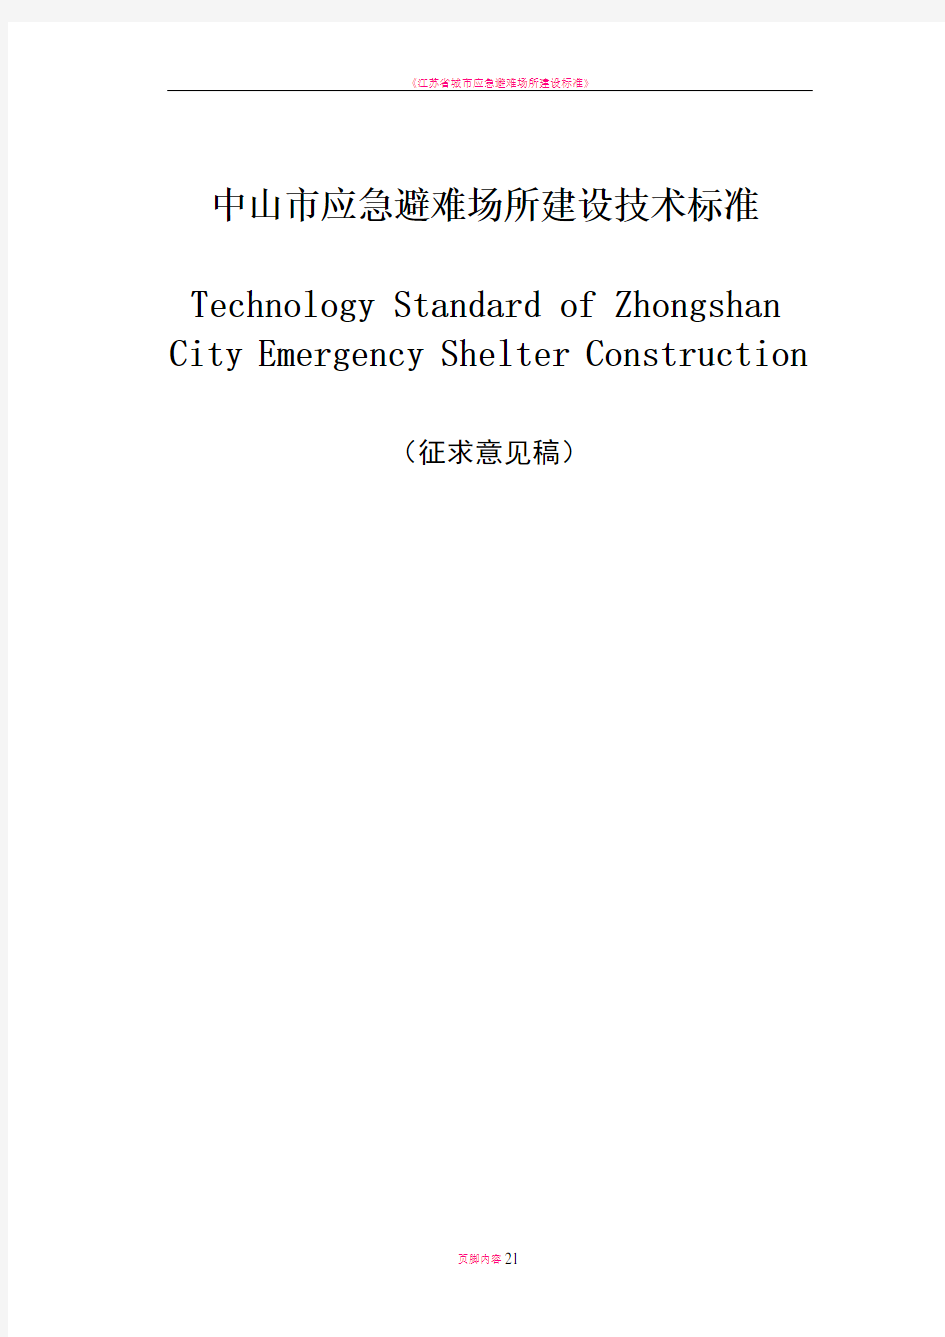 城市应急避难场所建设技术标准